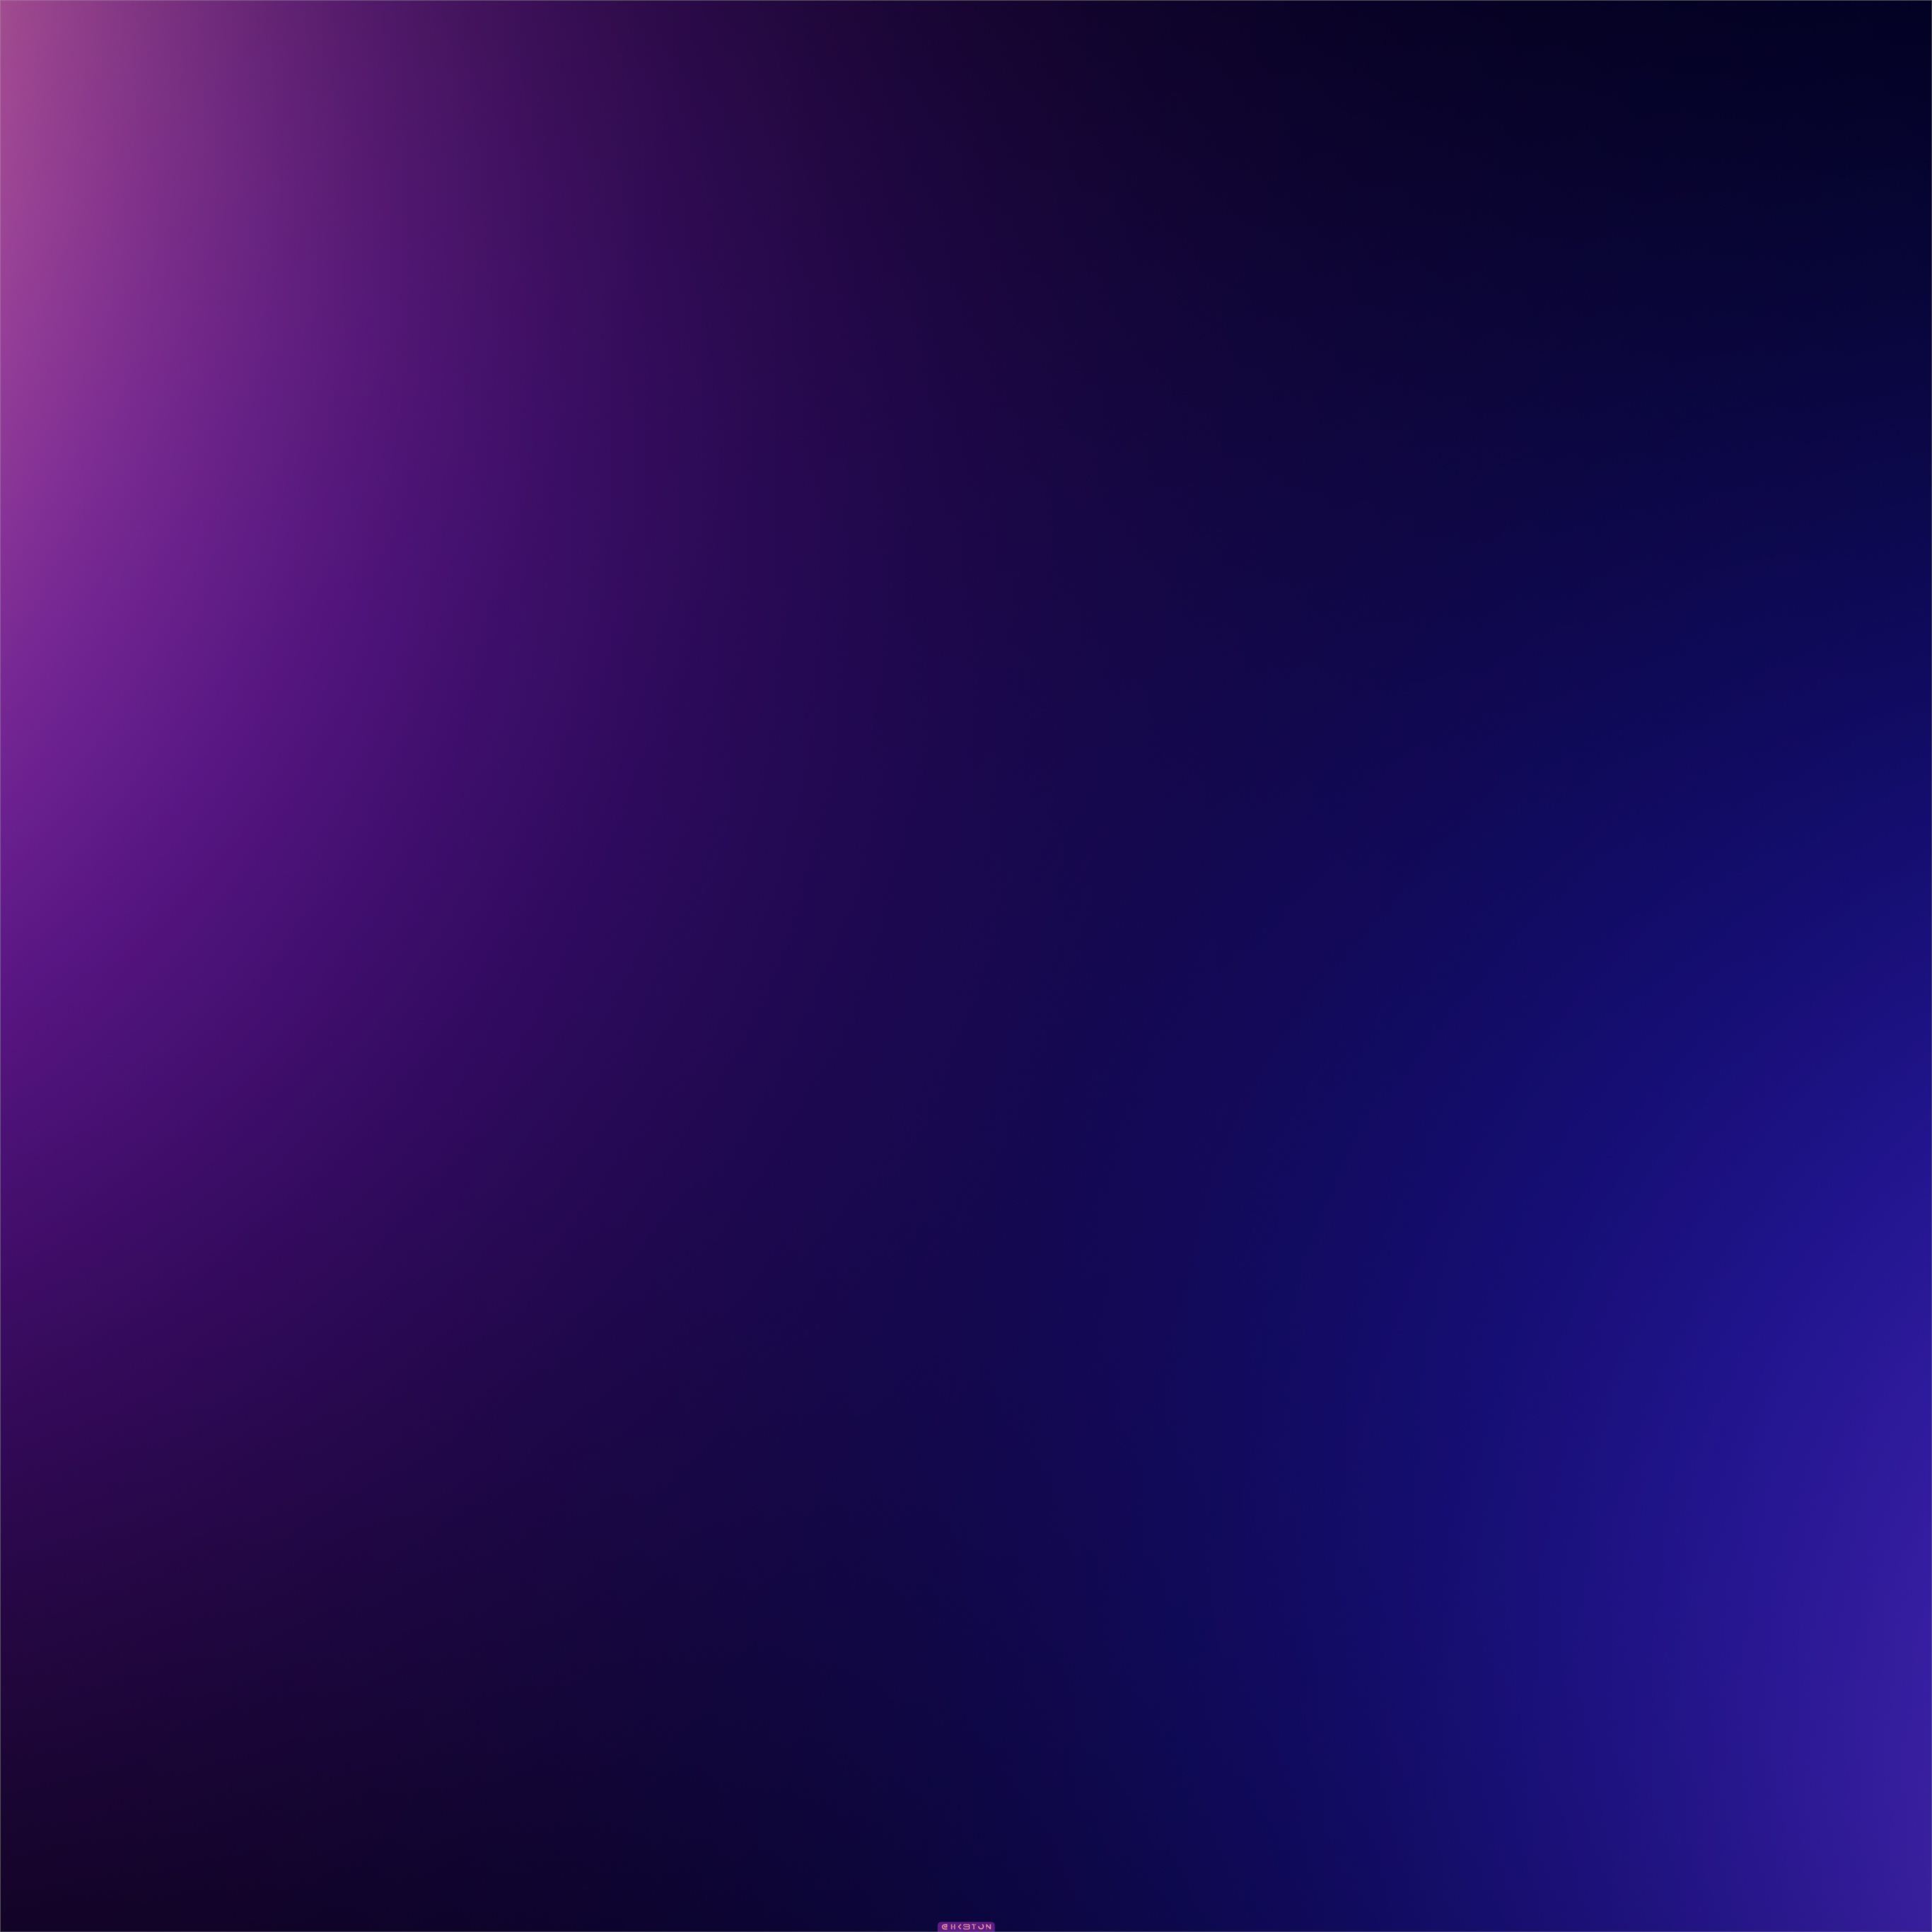 Hình ảnh sự kết hợp giữa màu tím và xanh với hiệu ứng abstract purple blue blur sẽ mang đến cho bạn cảm giác khác biệt. Hãy dành thời gian để khám phá vẻ đẹp nghệ thuật của những hình ảnh đầy màu sắc này. 